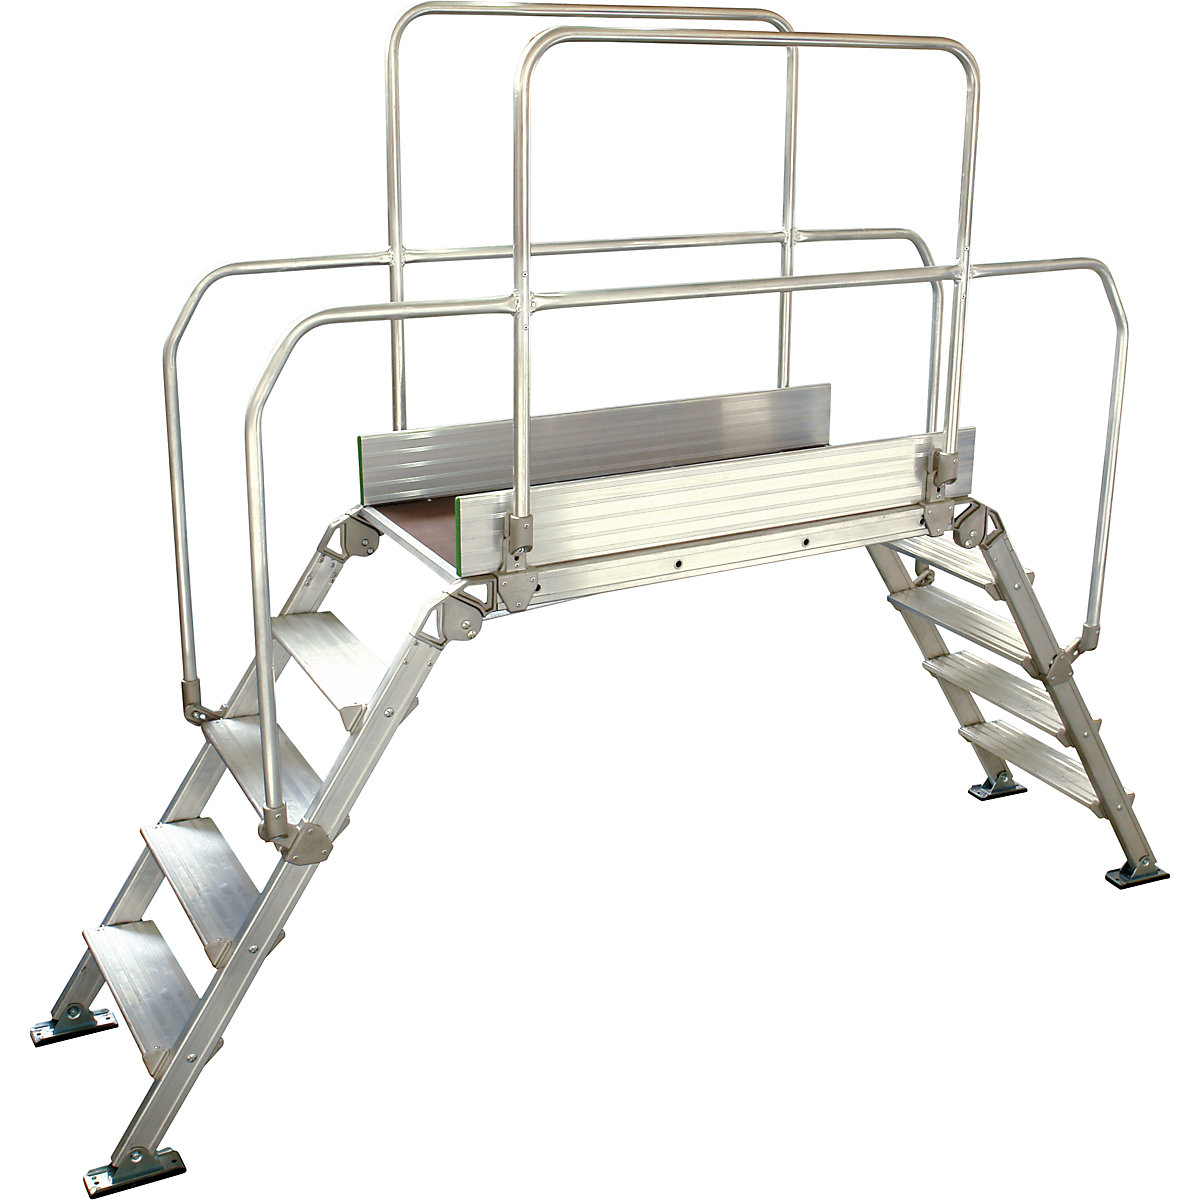 Aluminijasta premostitvena lestev, skupna obremenitev 200 kg, 5 stopnic, podest 1200 x 530 mm